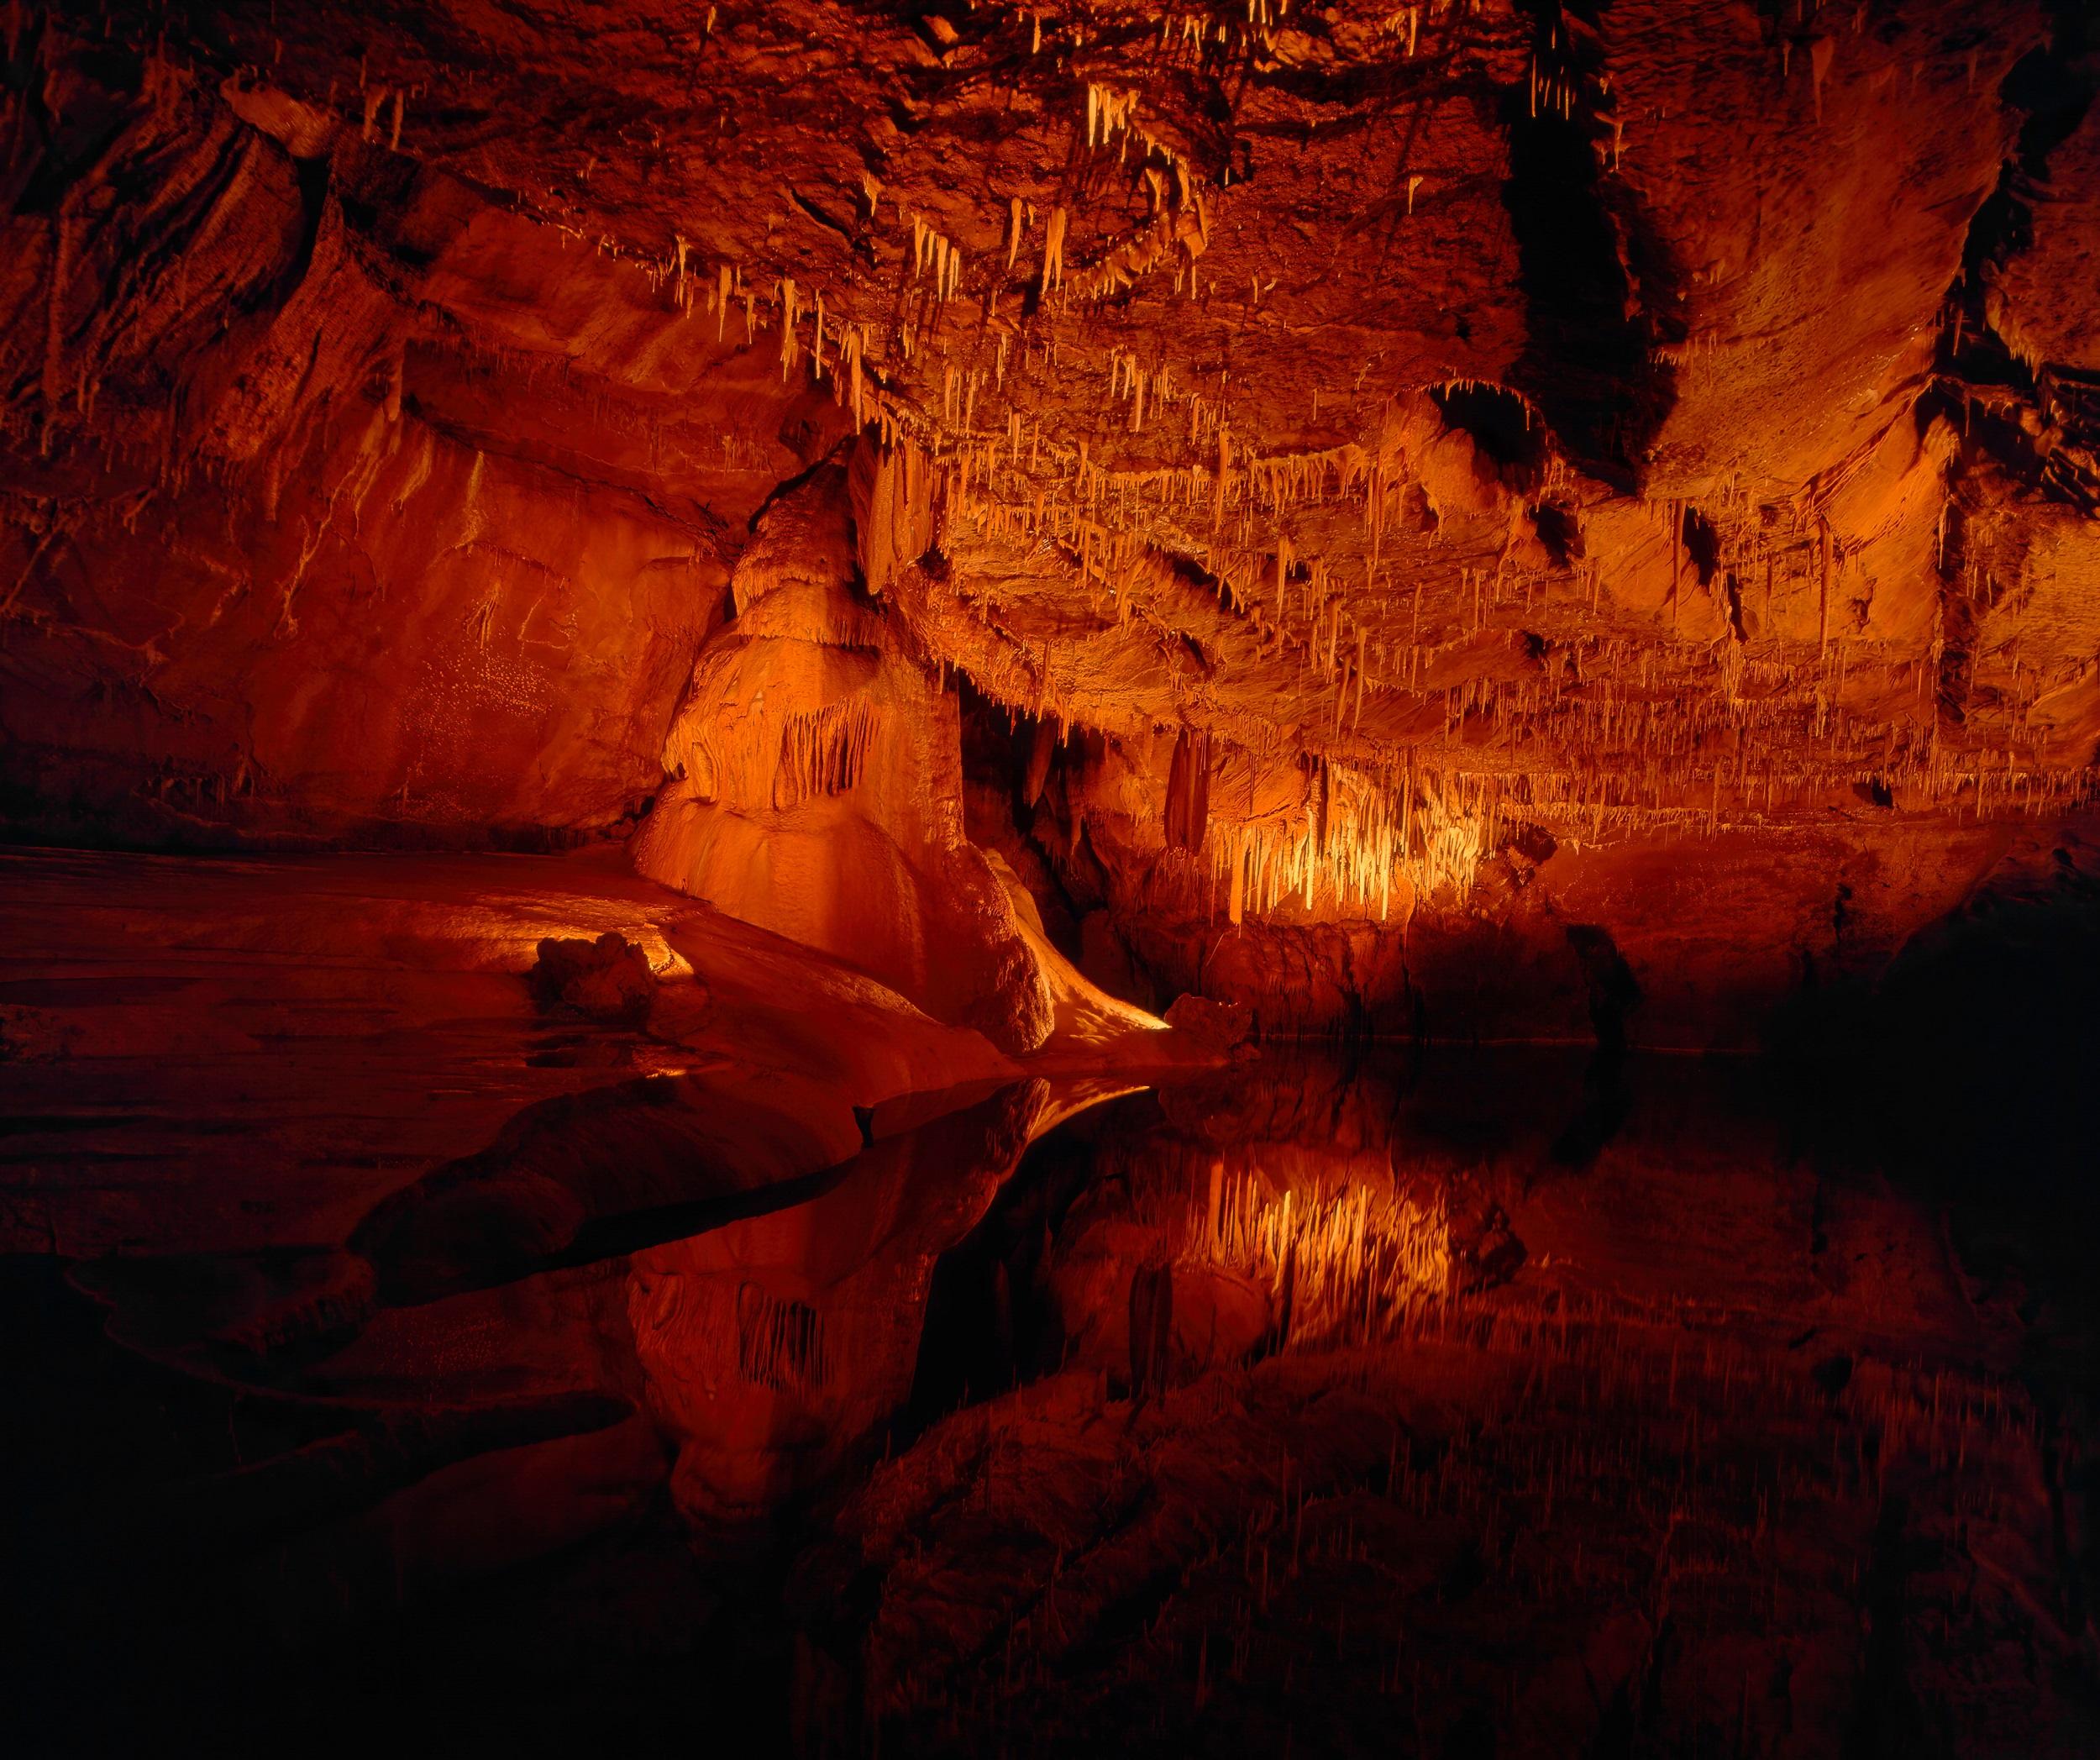 France - Grottes de Lascaux